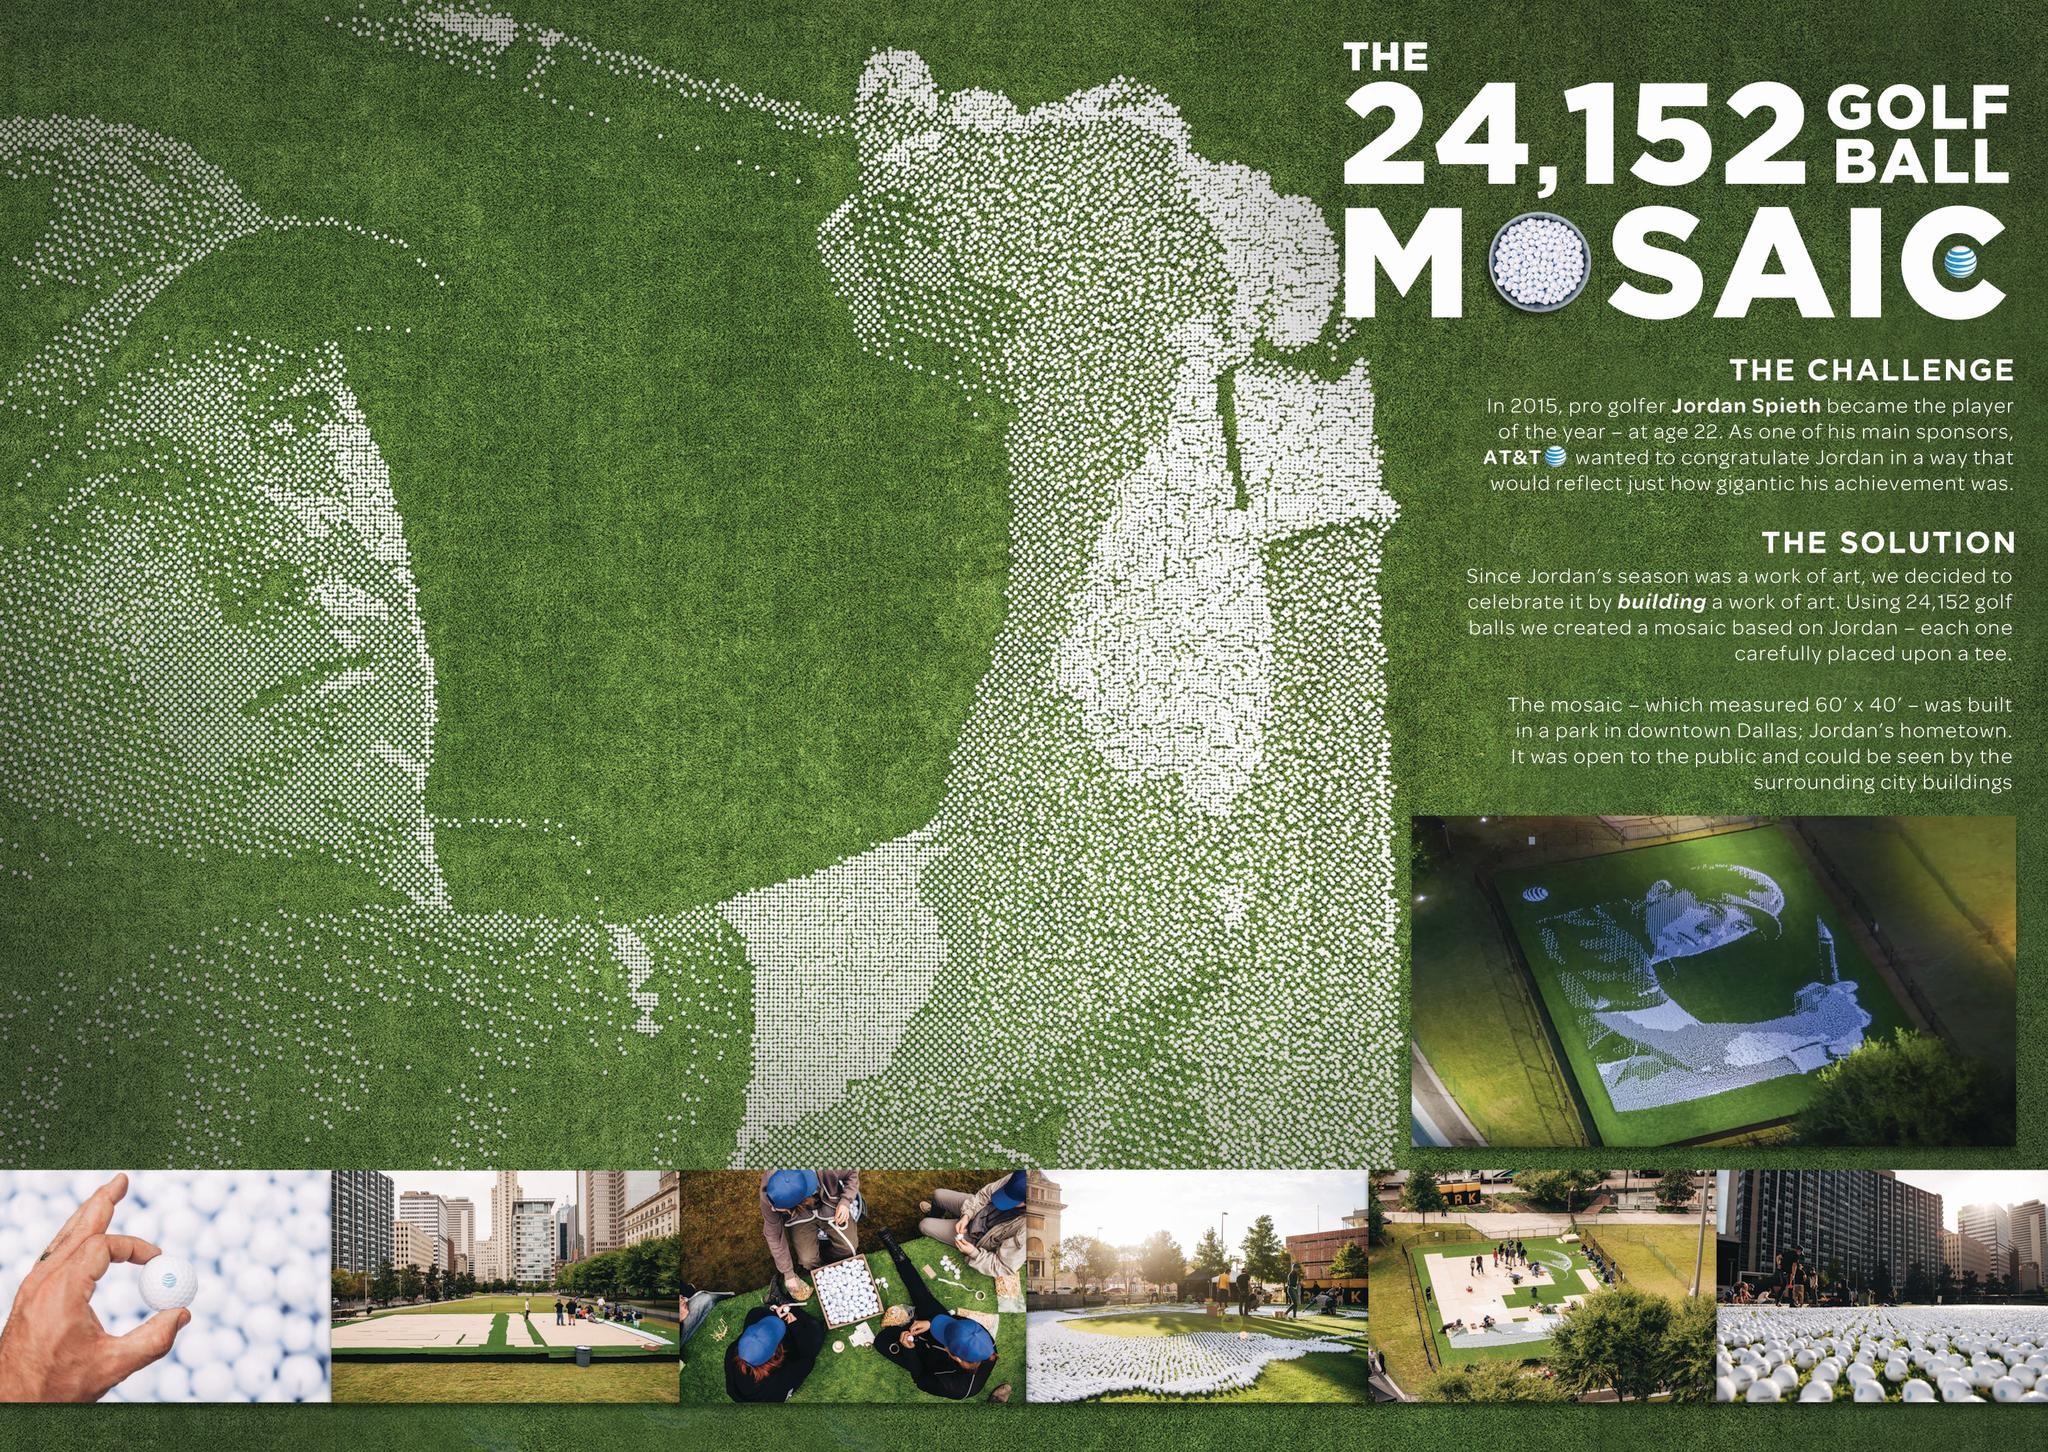 The 24,152 Golf Ball Mosaic